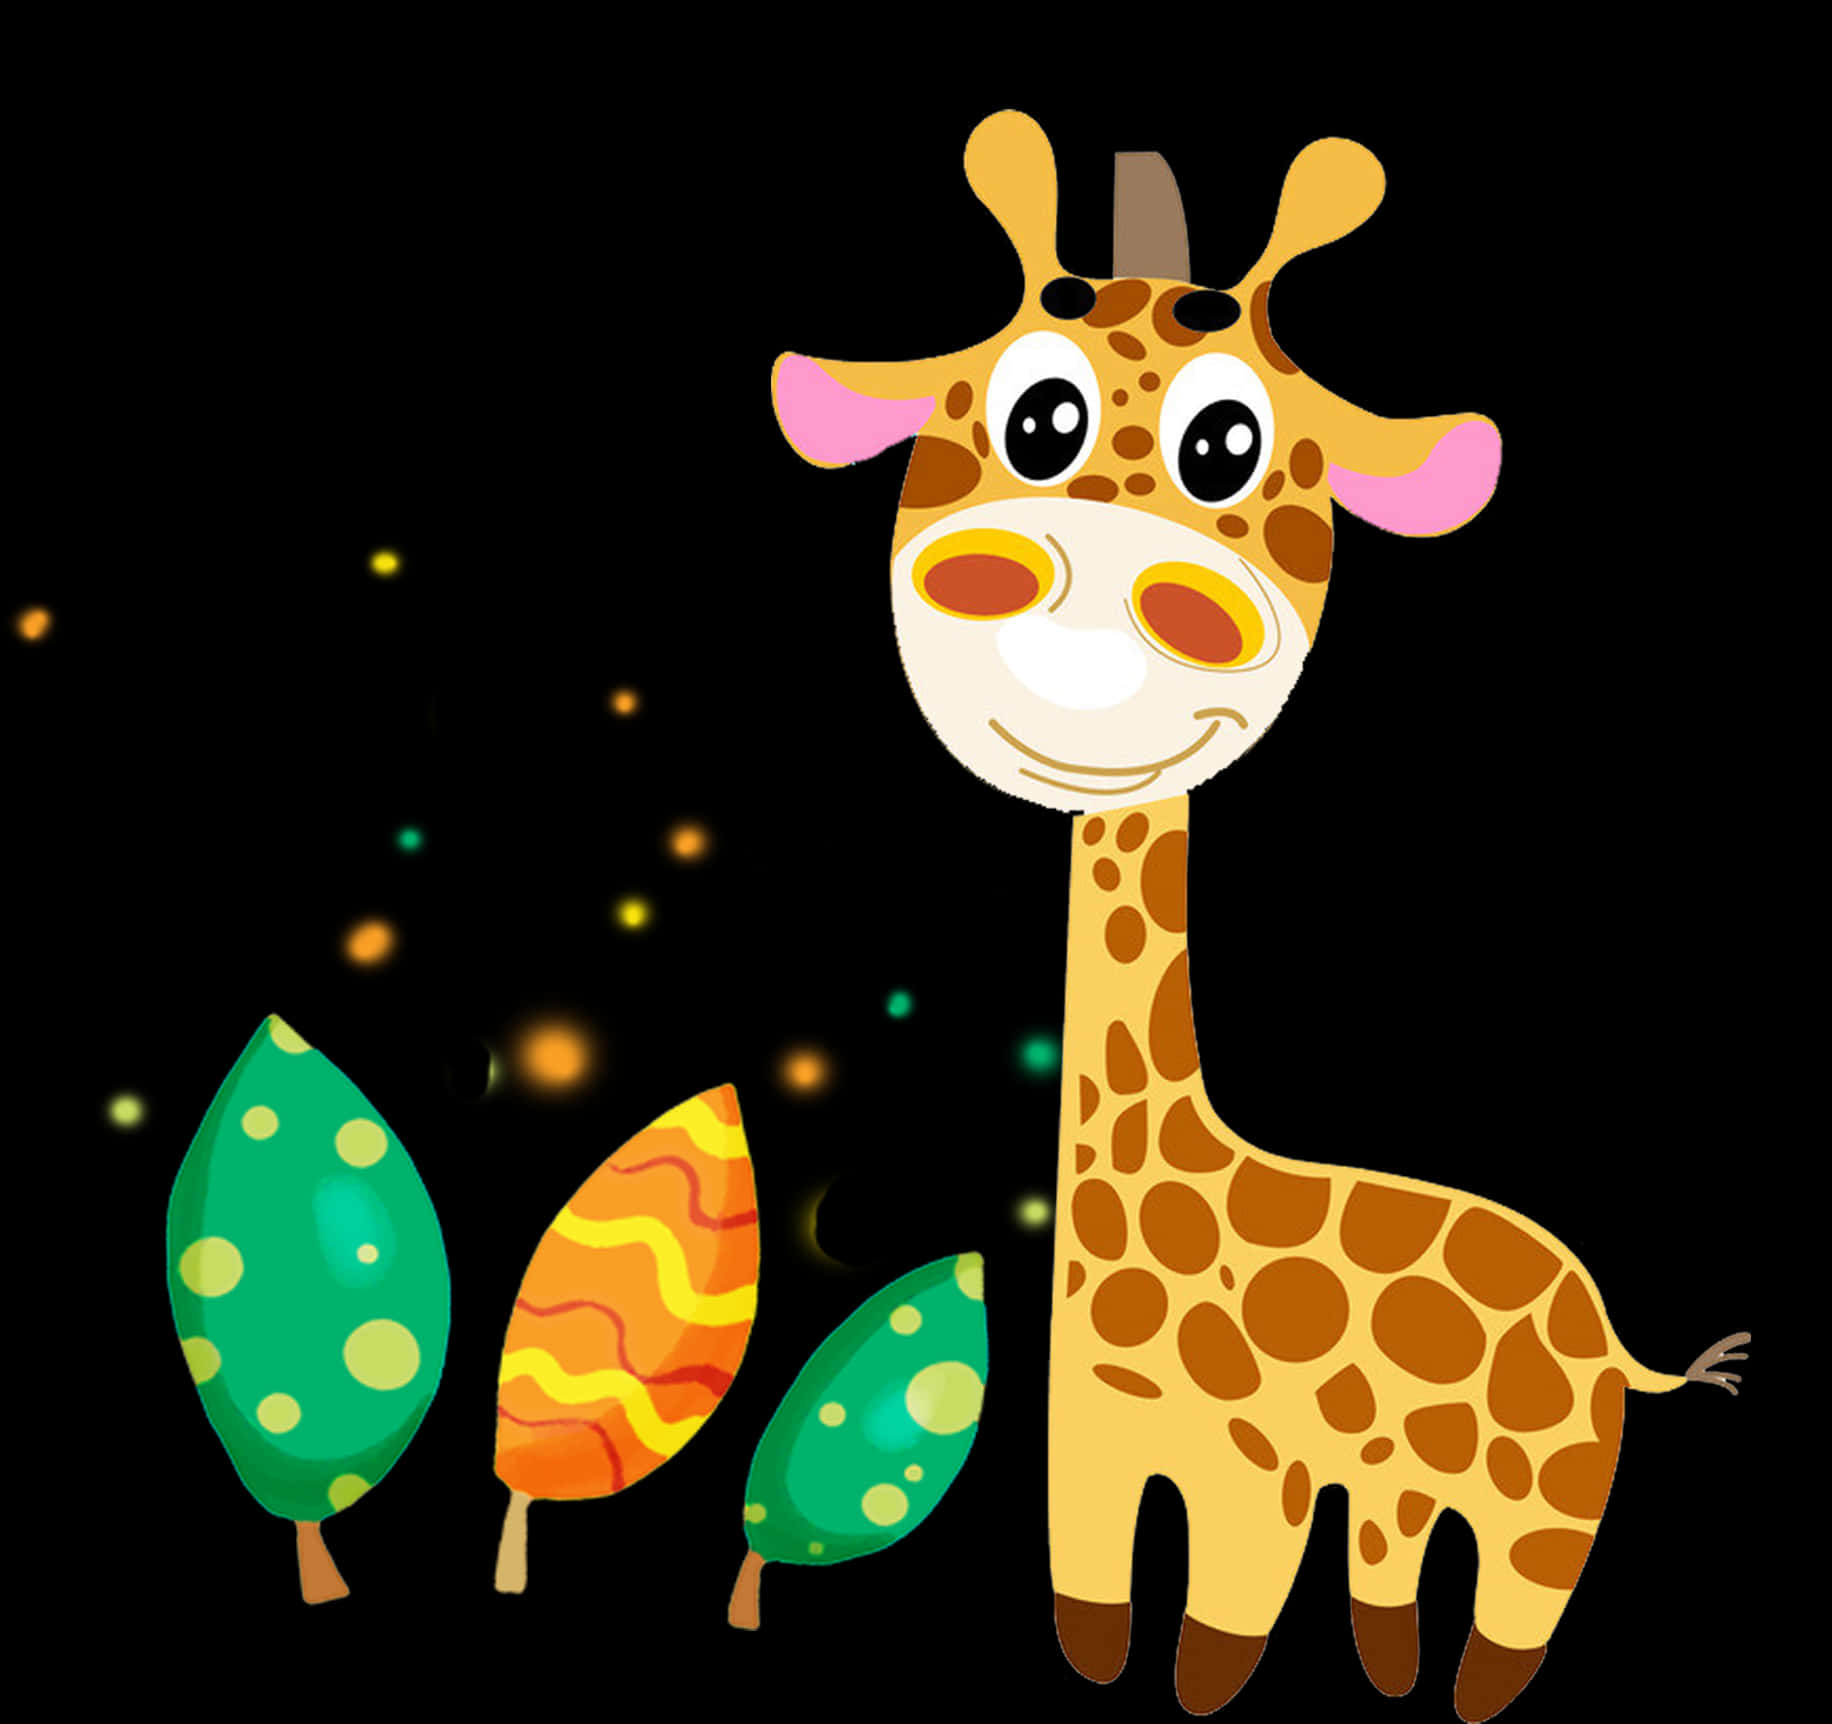 Umbebê Girafa Pronto Para Explorar O Mundo